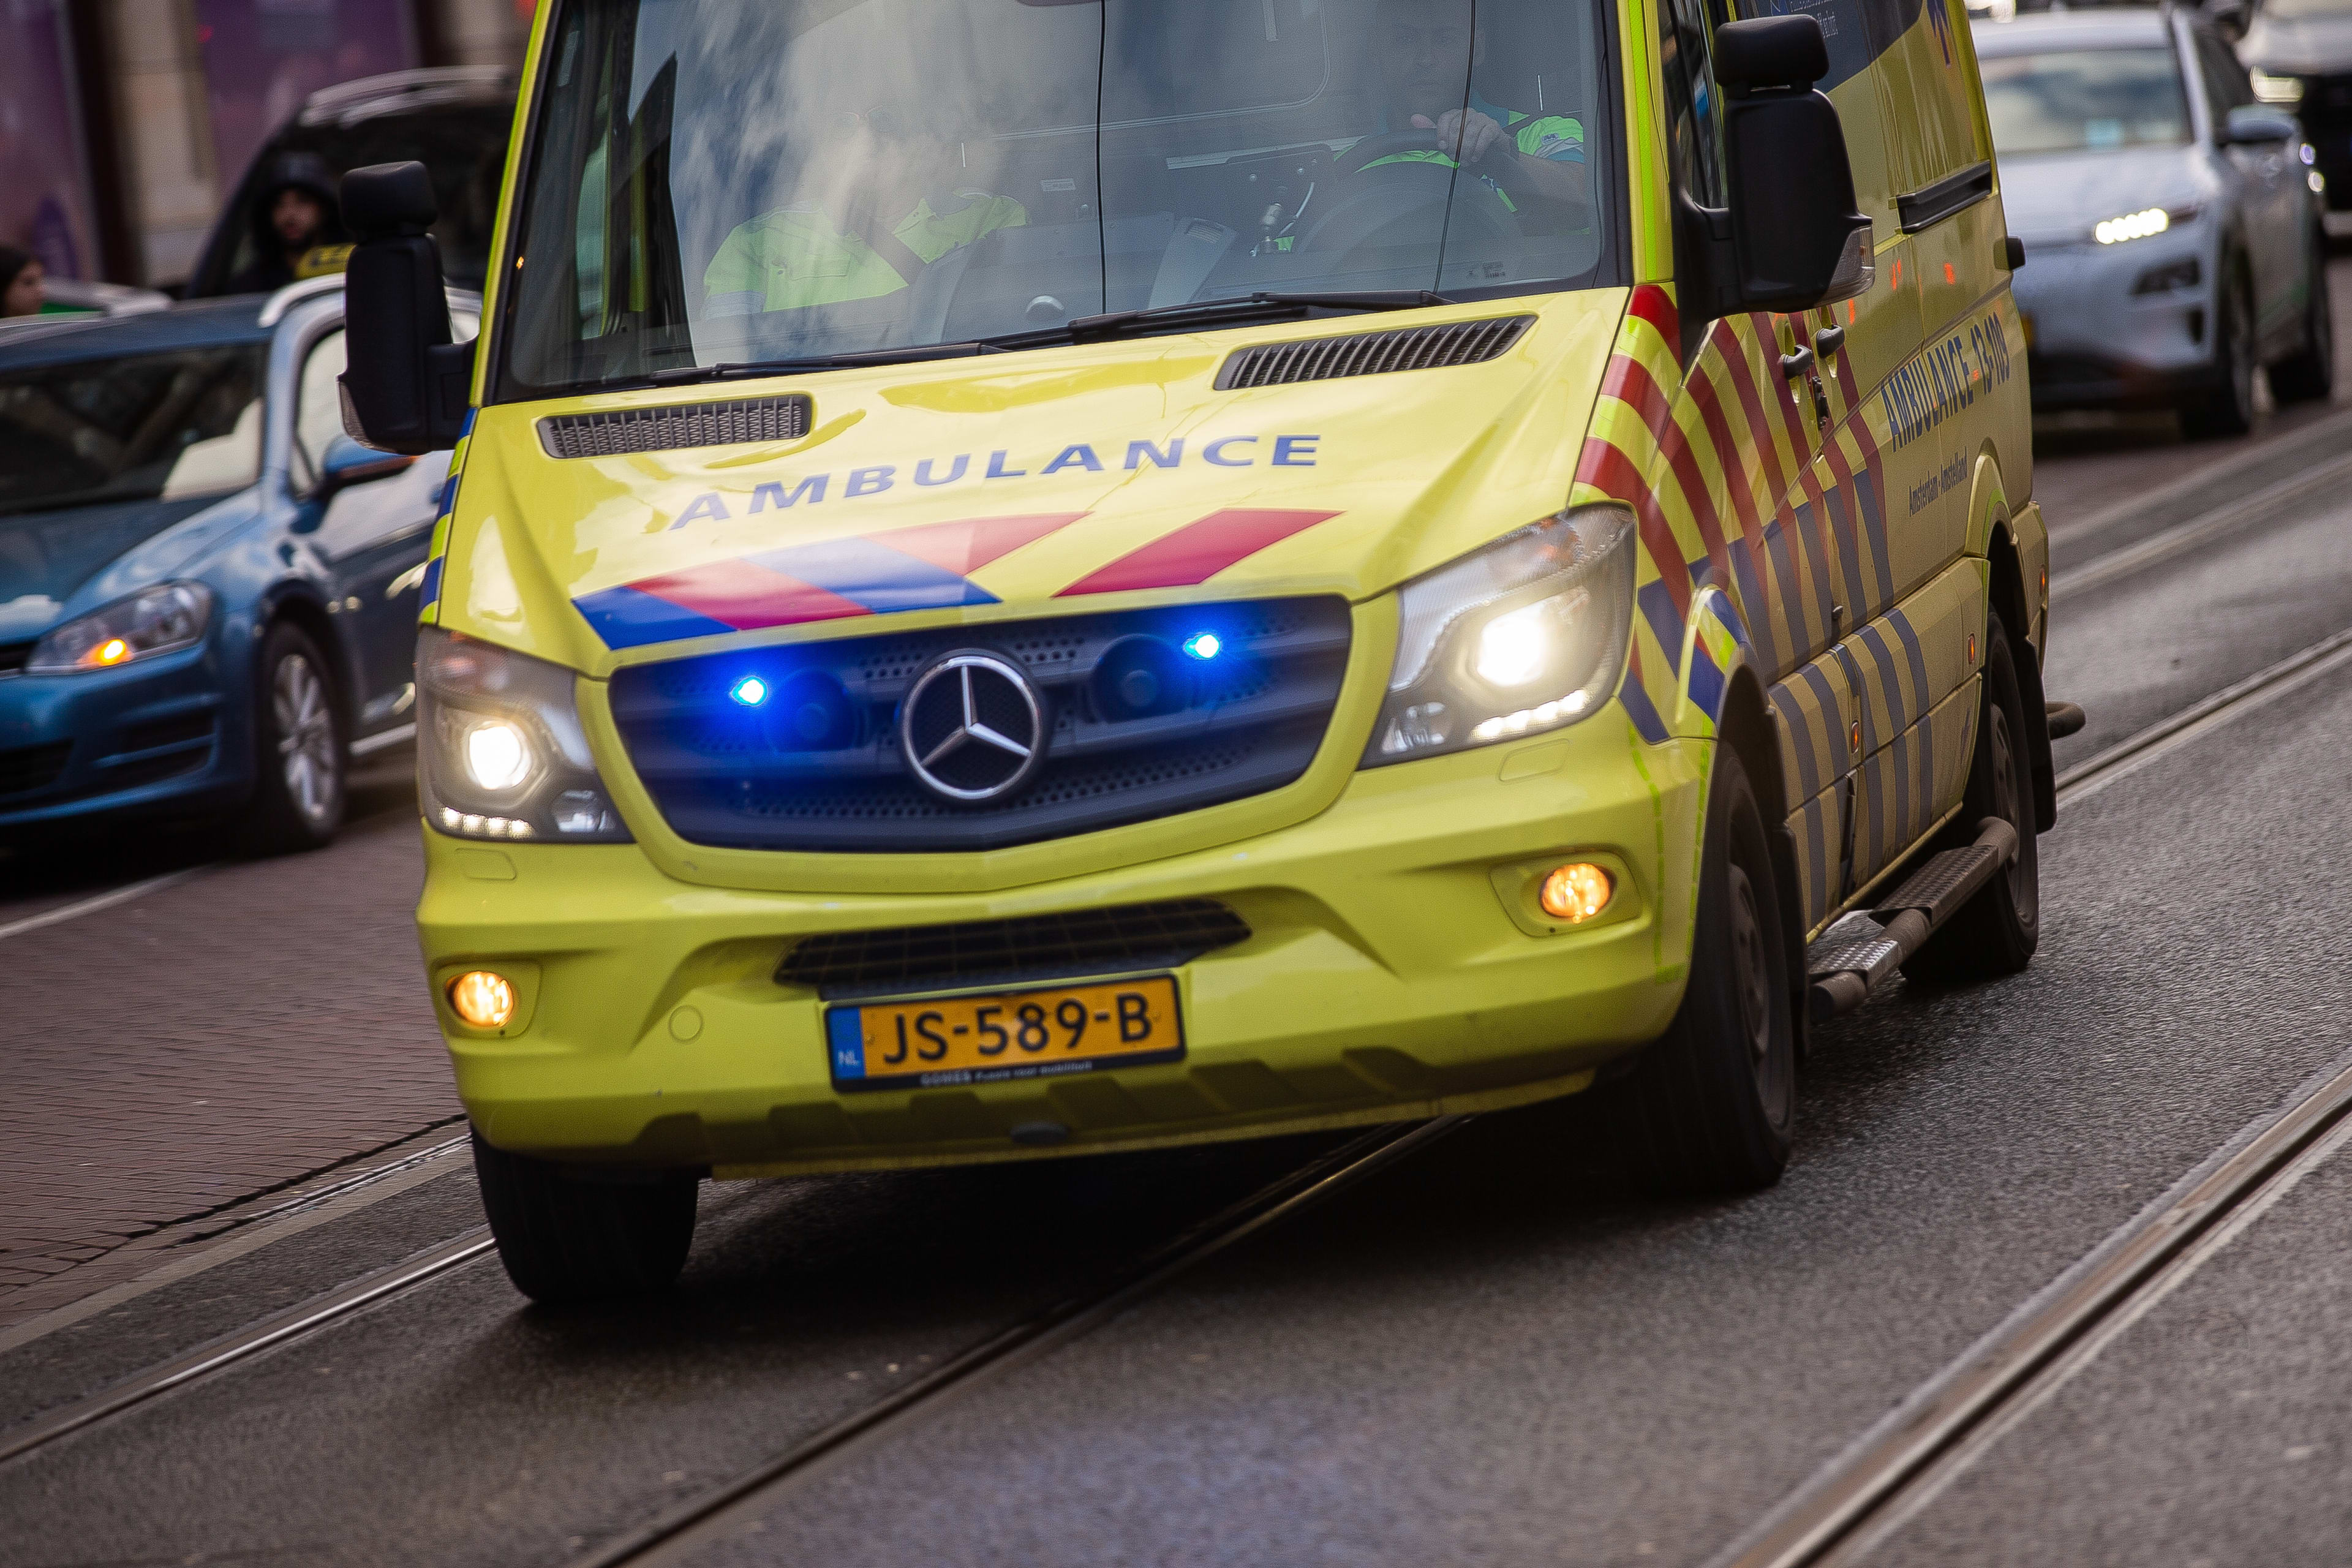 Amsterdamse taxichauffeur zwaar toegetakeld na 'verhit gesprek'